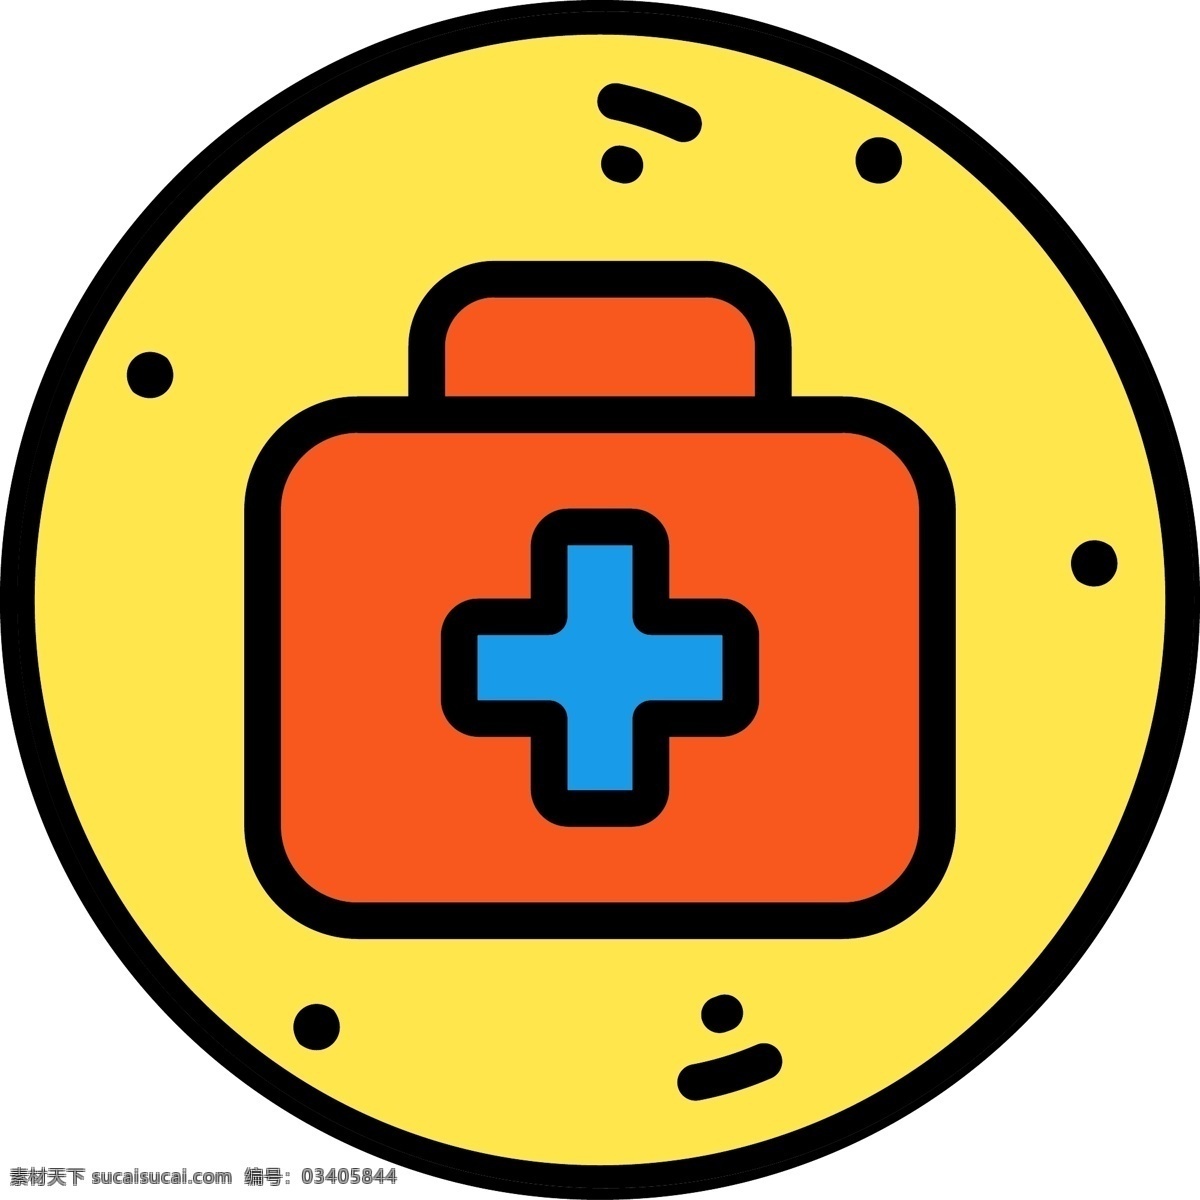 卡通 医 药箱 图标 免 抠 图 红色 免抠图 医药箱 蓝色图标 黄色圆形图案 图标免抠图 卡通医药箱